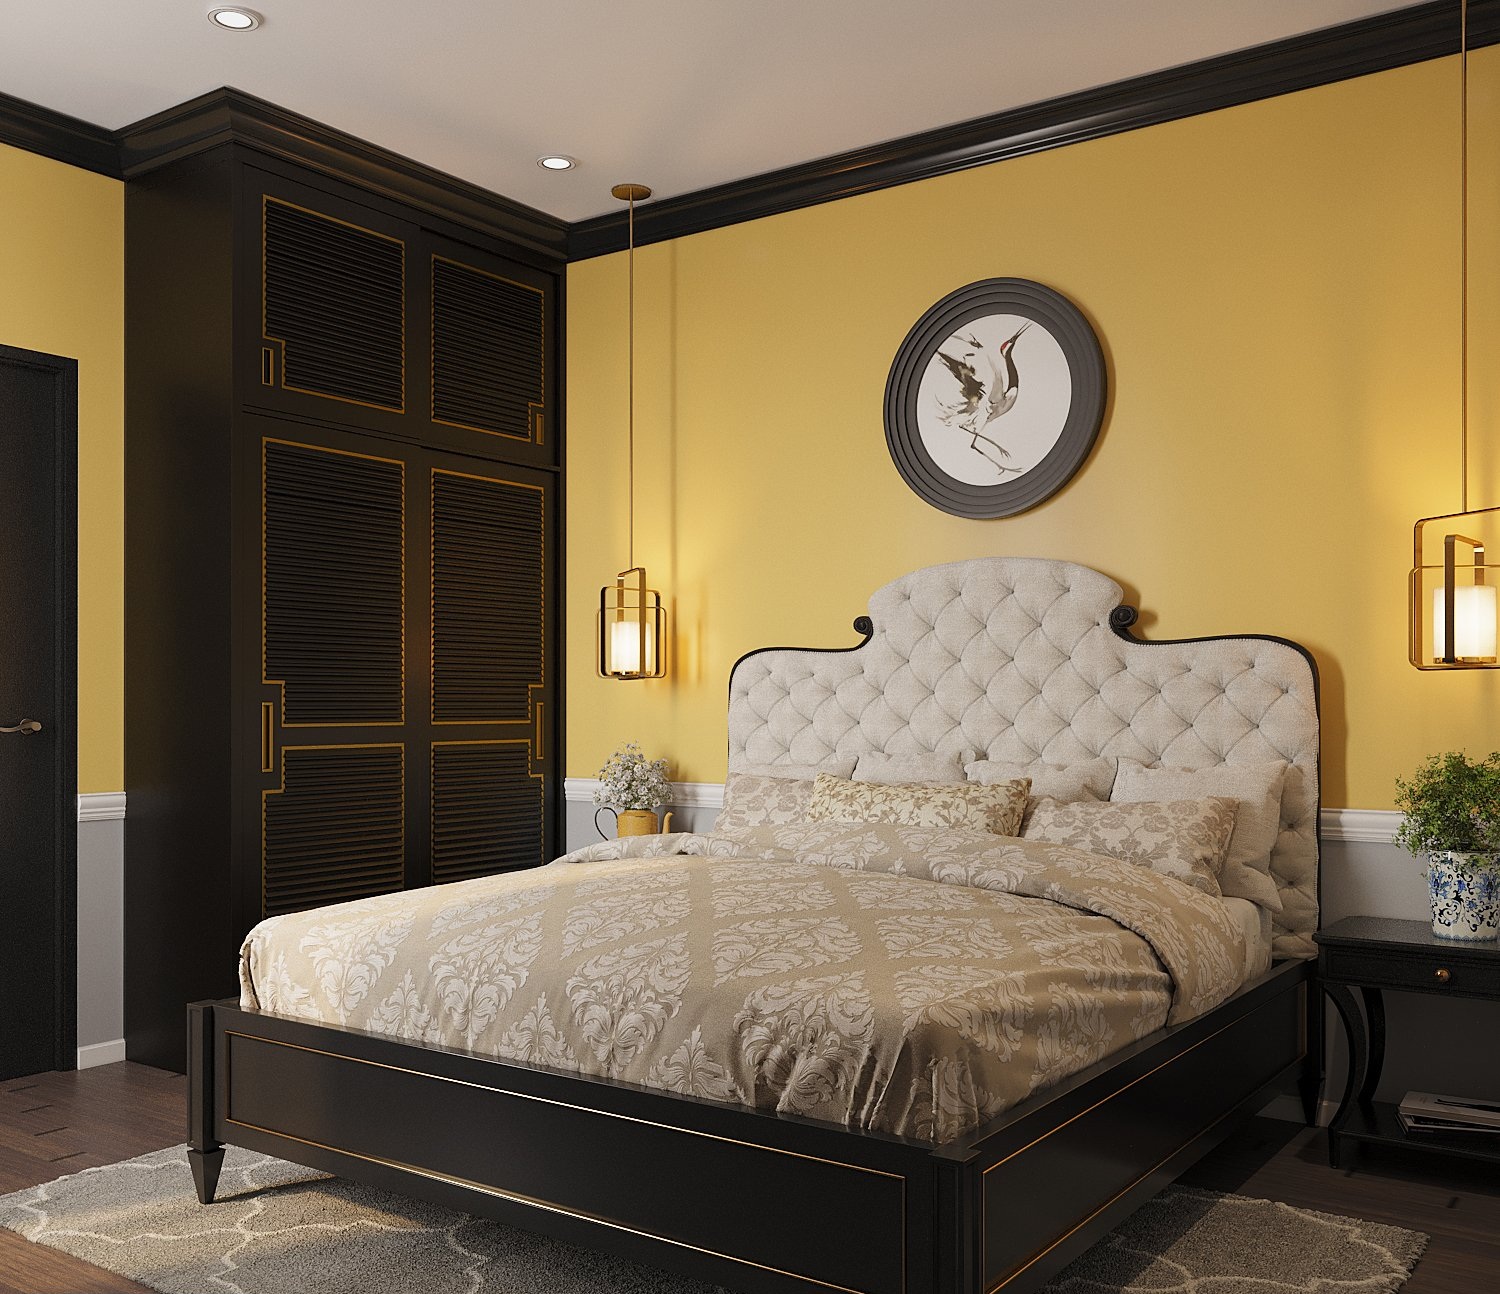 Thiết kế nội thất phòng ngủ thứ tư phù hợp với người trung tuổi, lớn tuổi. Bảng màu và đường nét nội thất đậm chất Indochine.